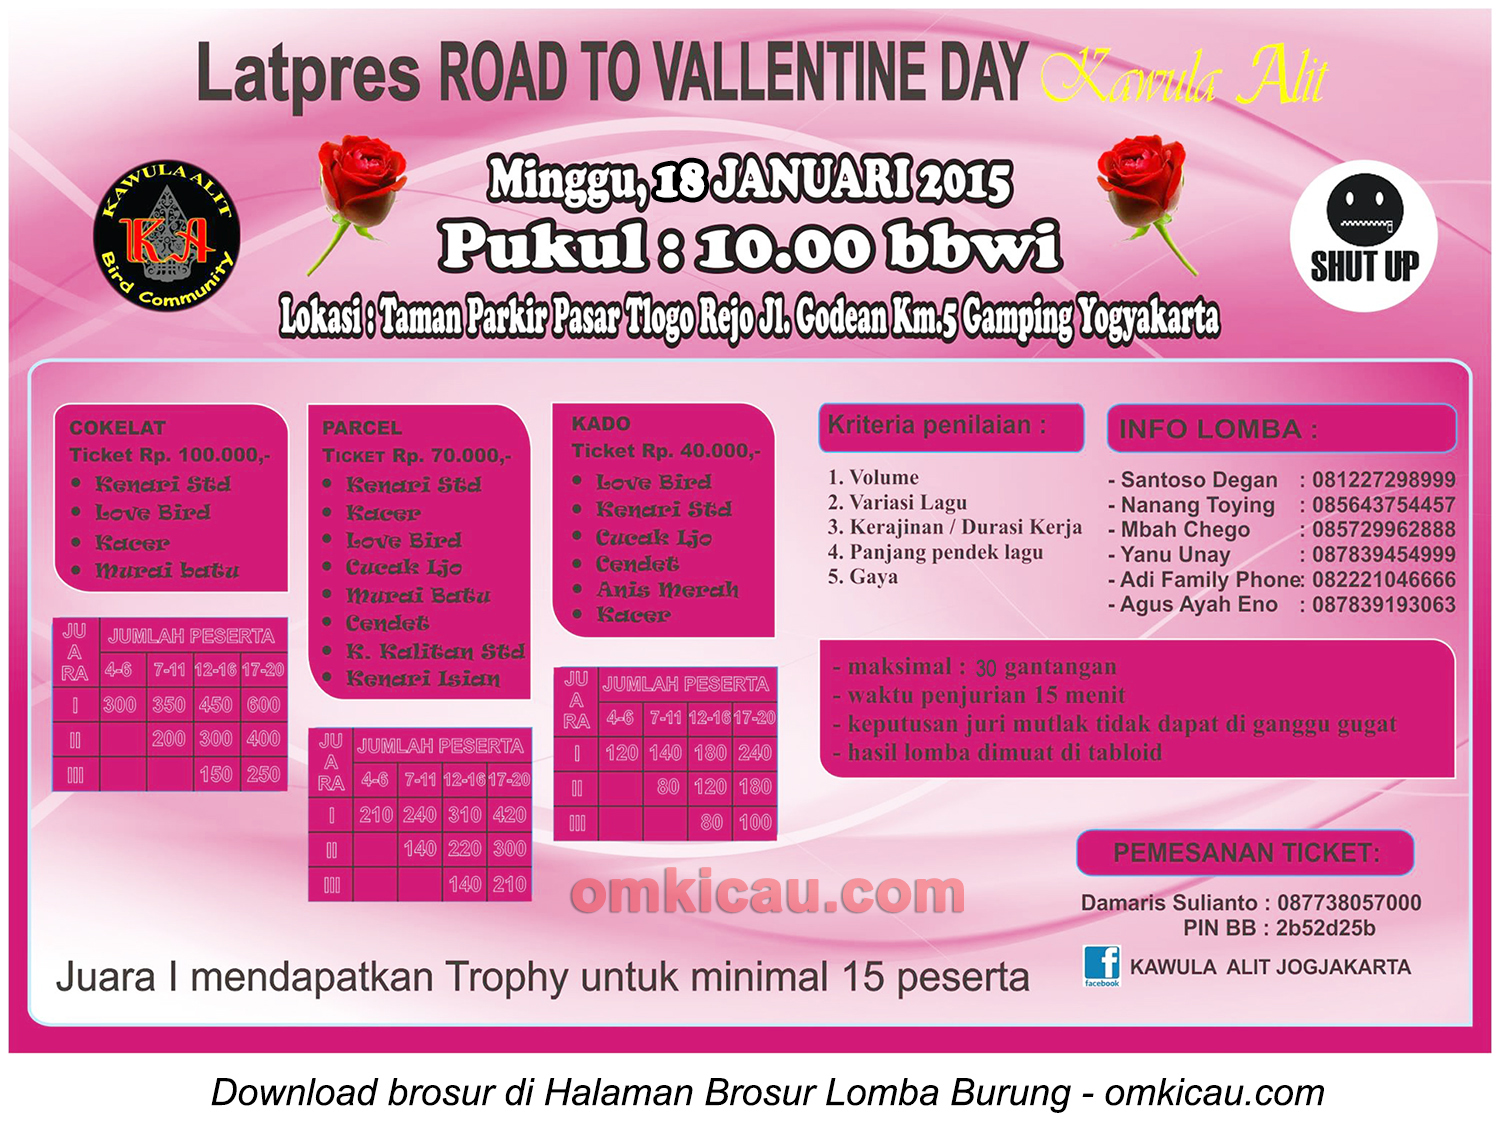 Brosur Latpres Road to Valentine Day - Kawula Alit, Jogja, 18 Januari 2015